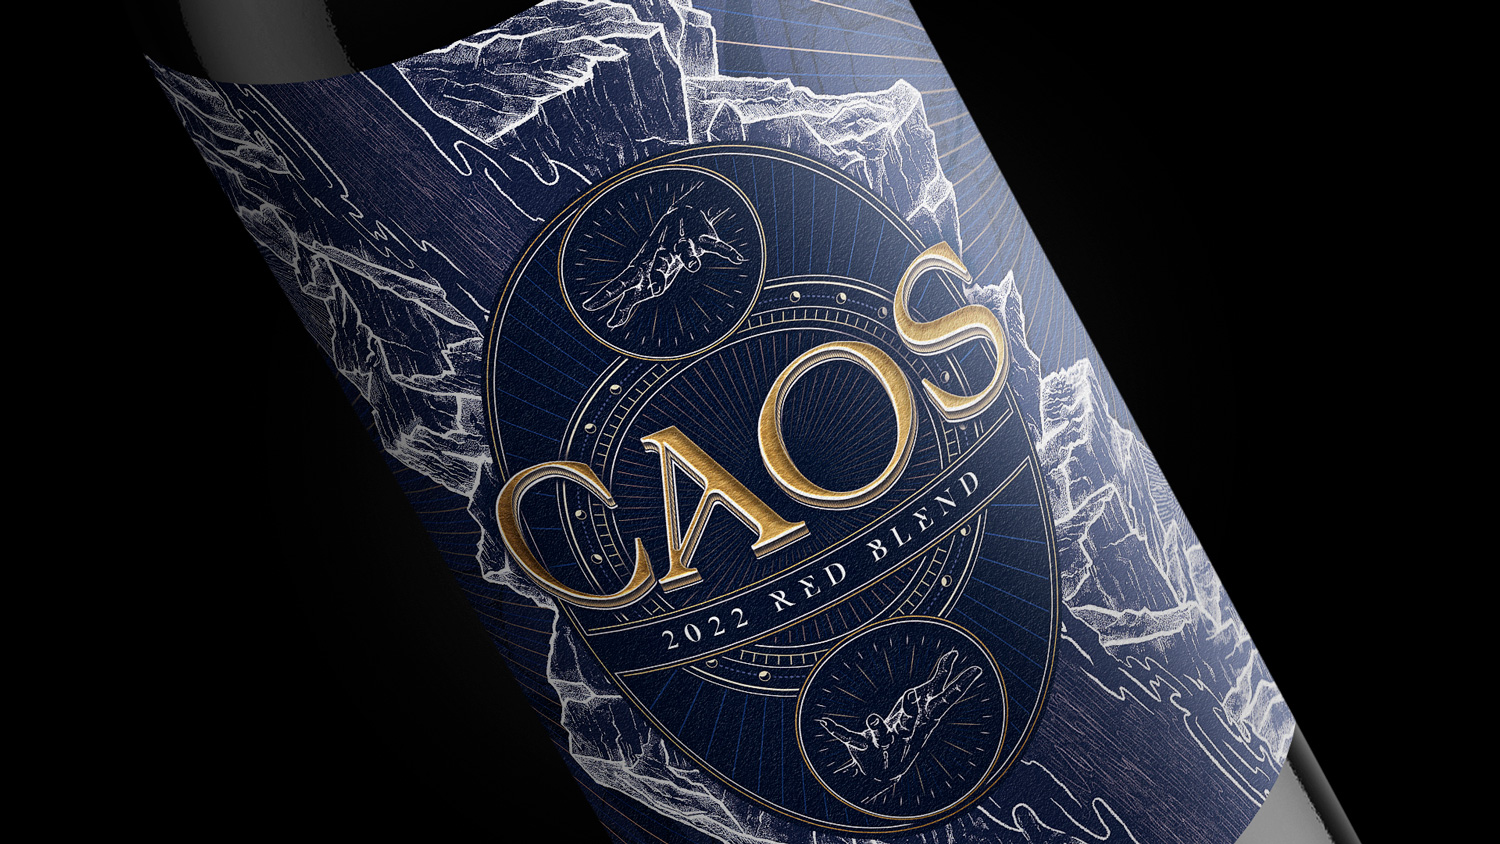 CAOS wine label design